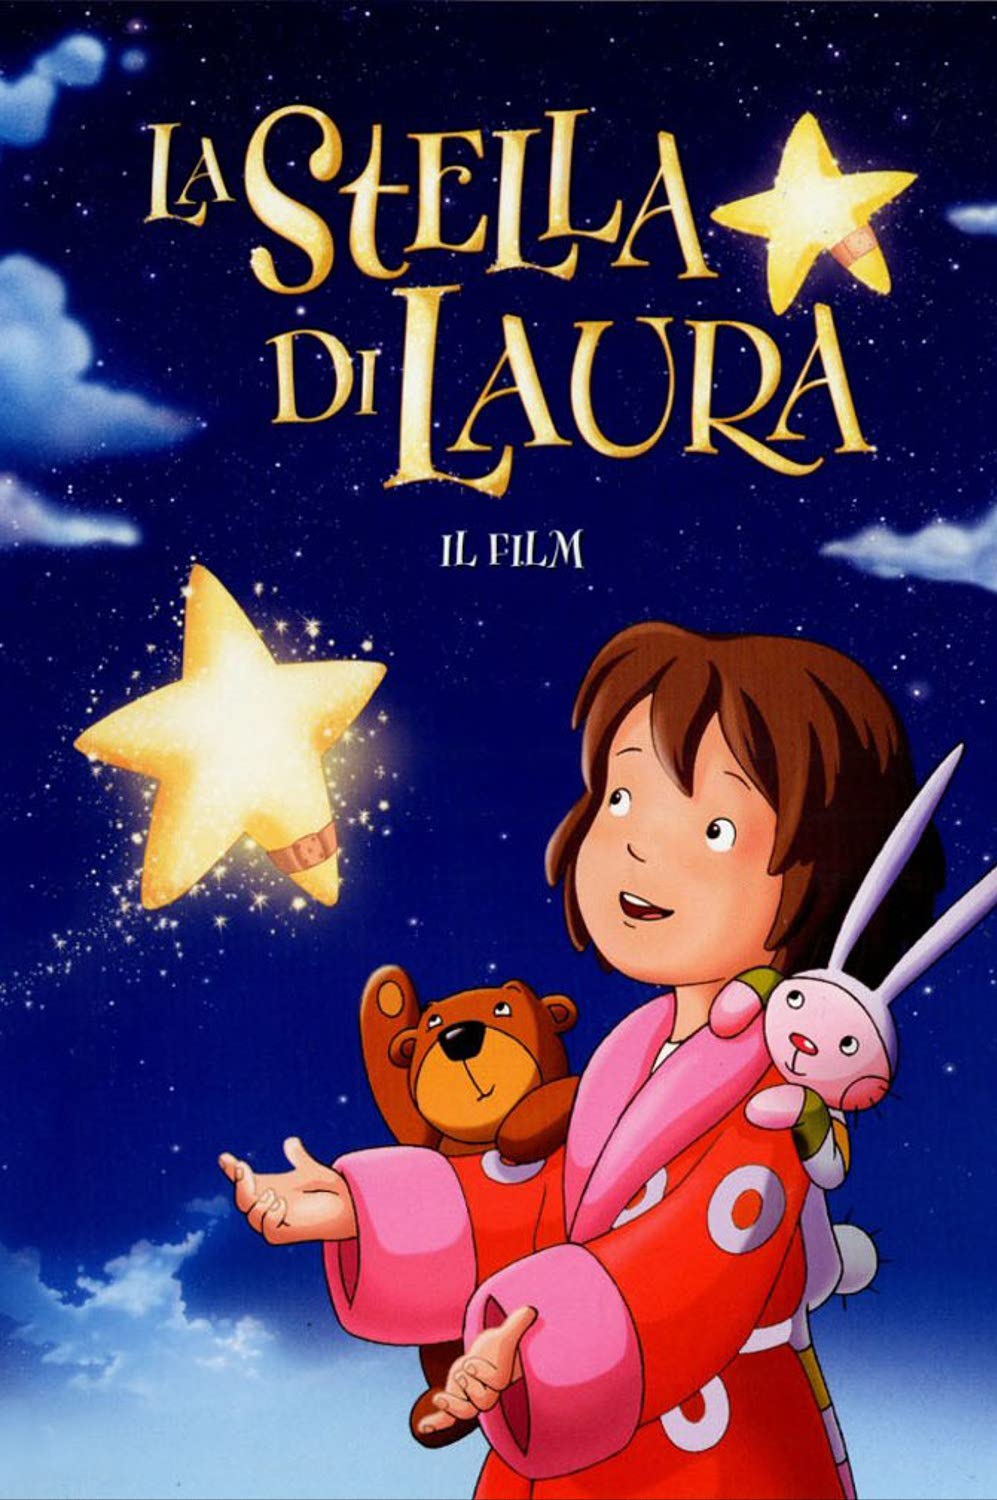 La stella di Laura (2004)